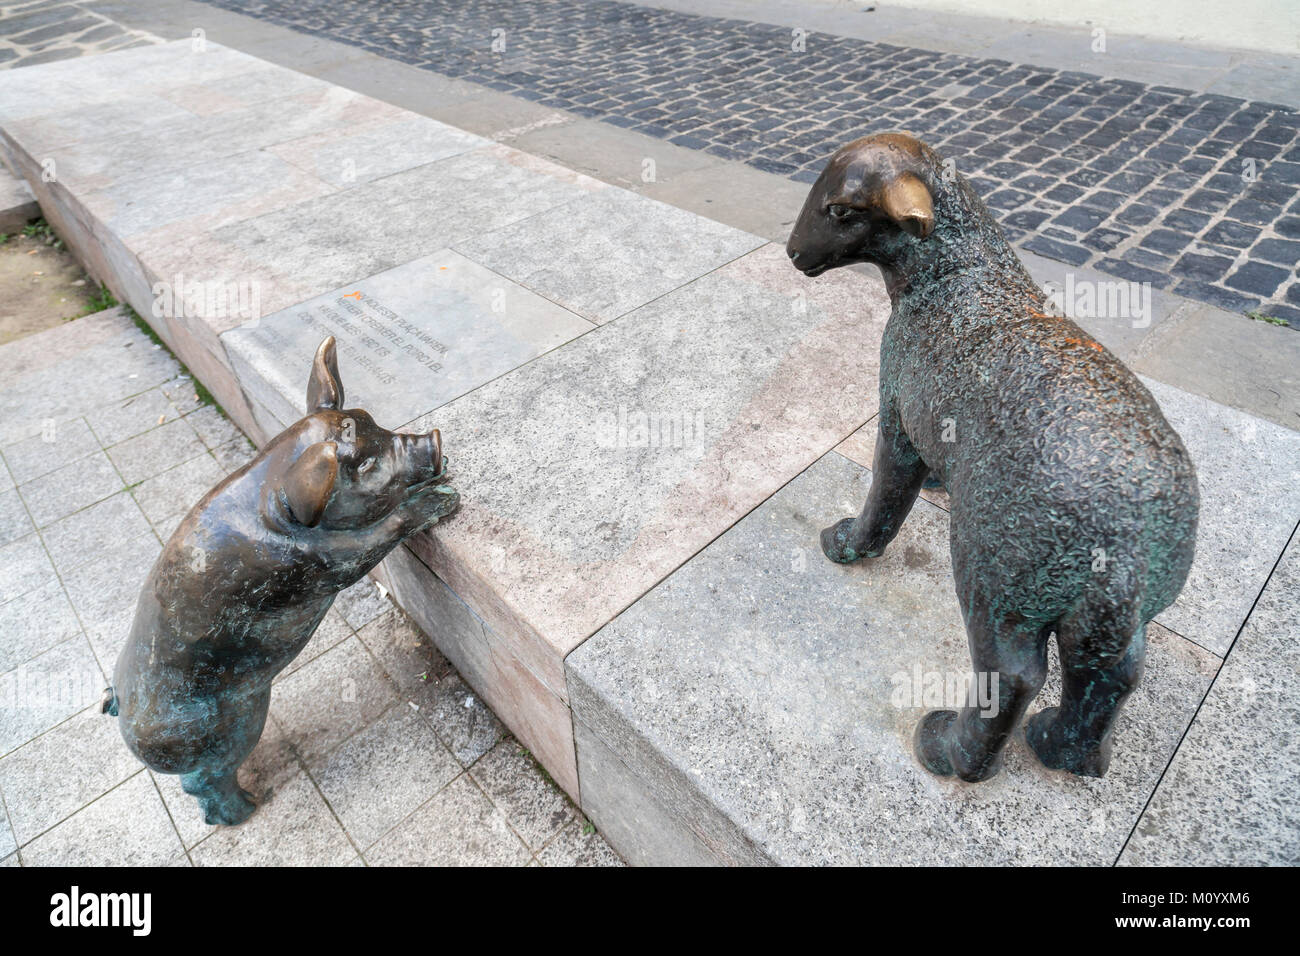 Urban art, Porc i Xai, Pig and lamb by Angel Rigall.Olot,Catalonia,Spain. Stock Photo